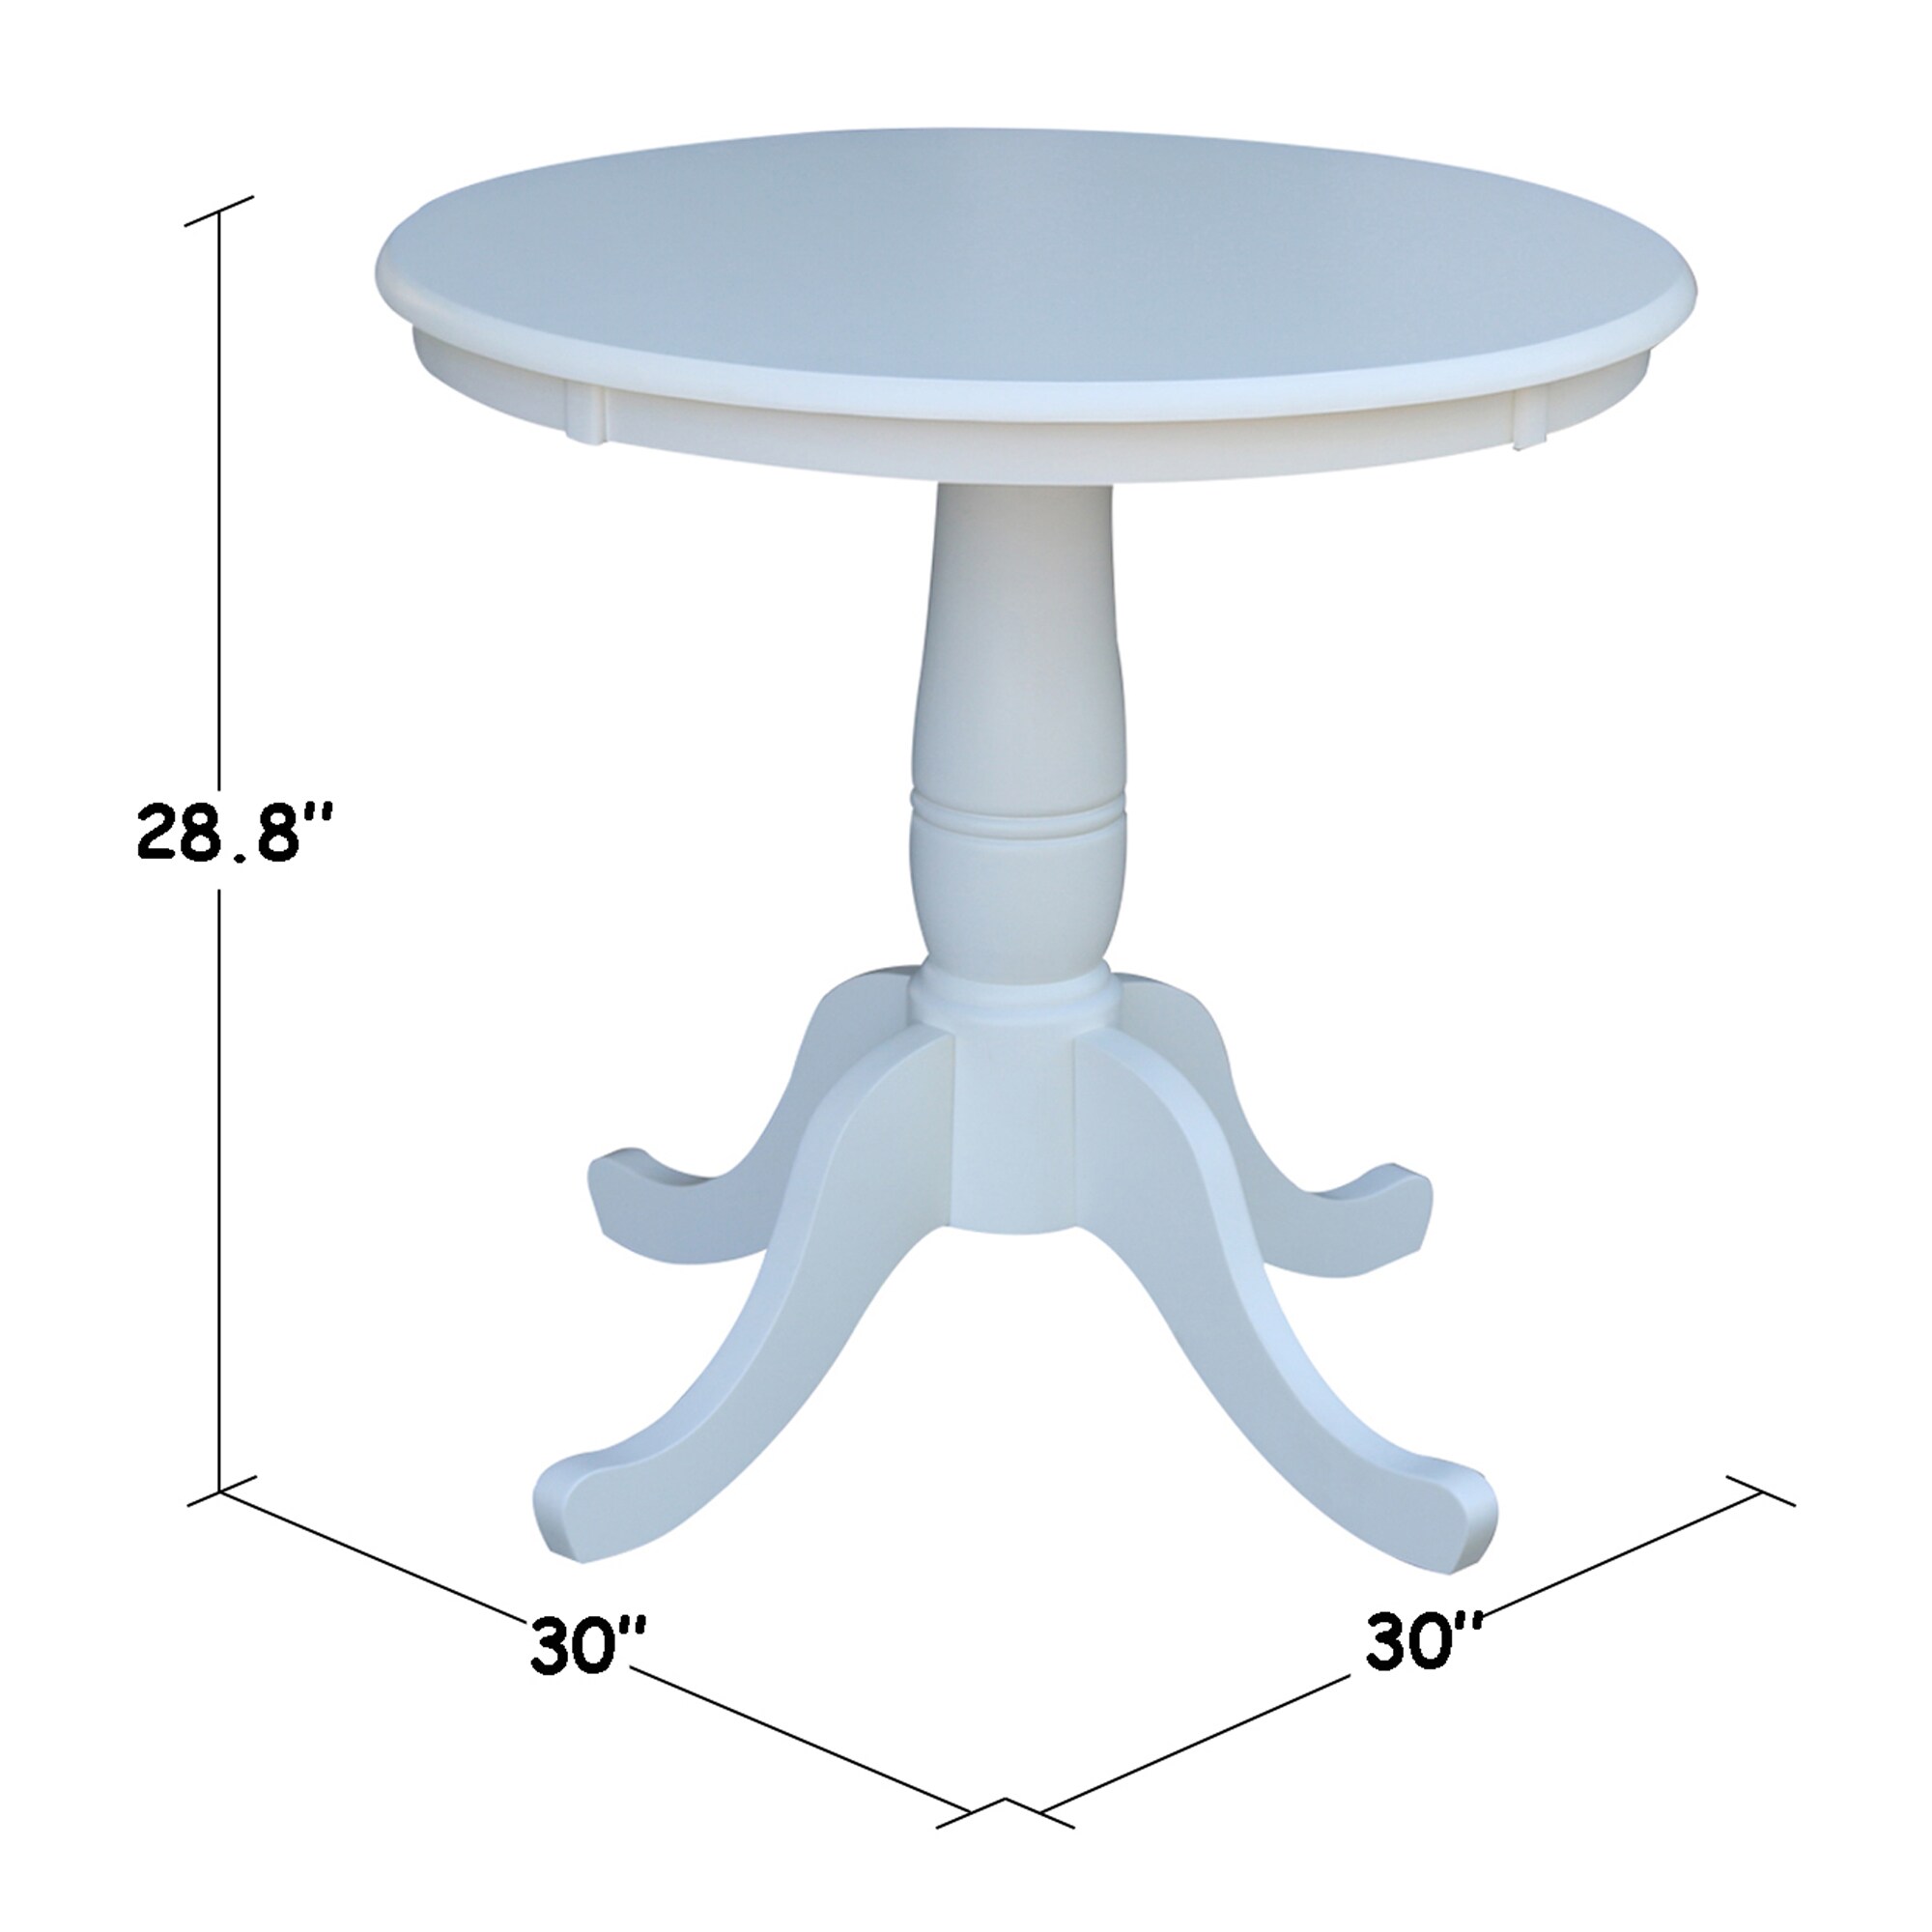 30 Diameter Round White Table Top